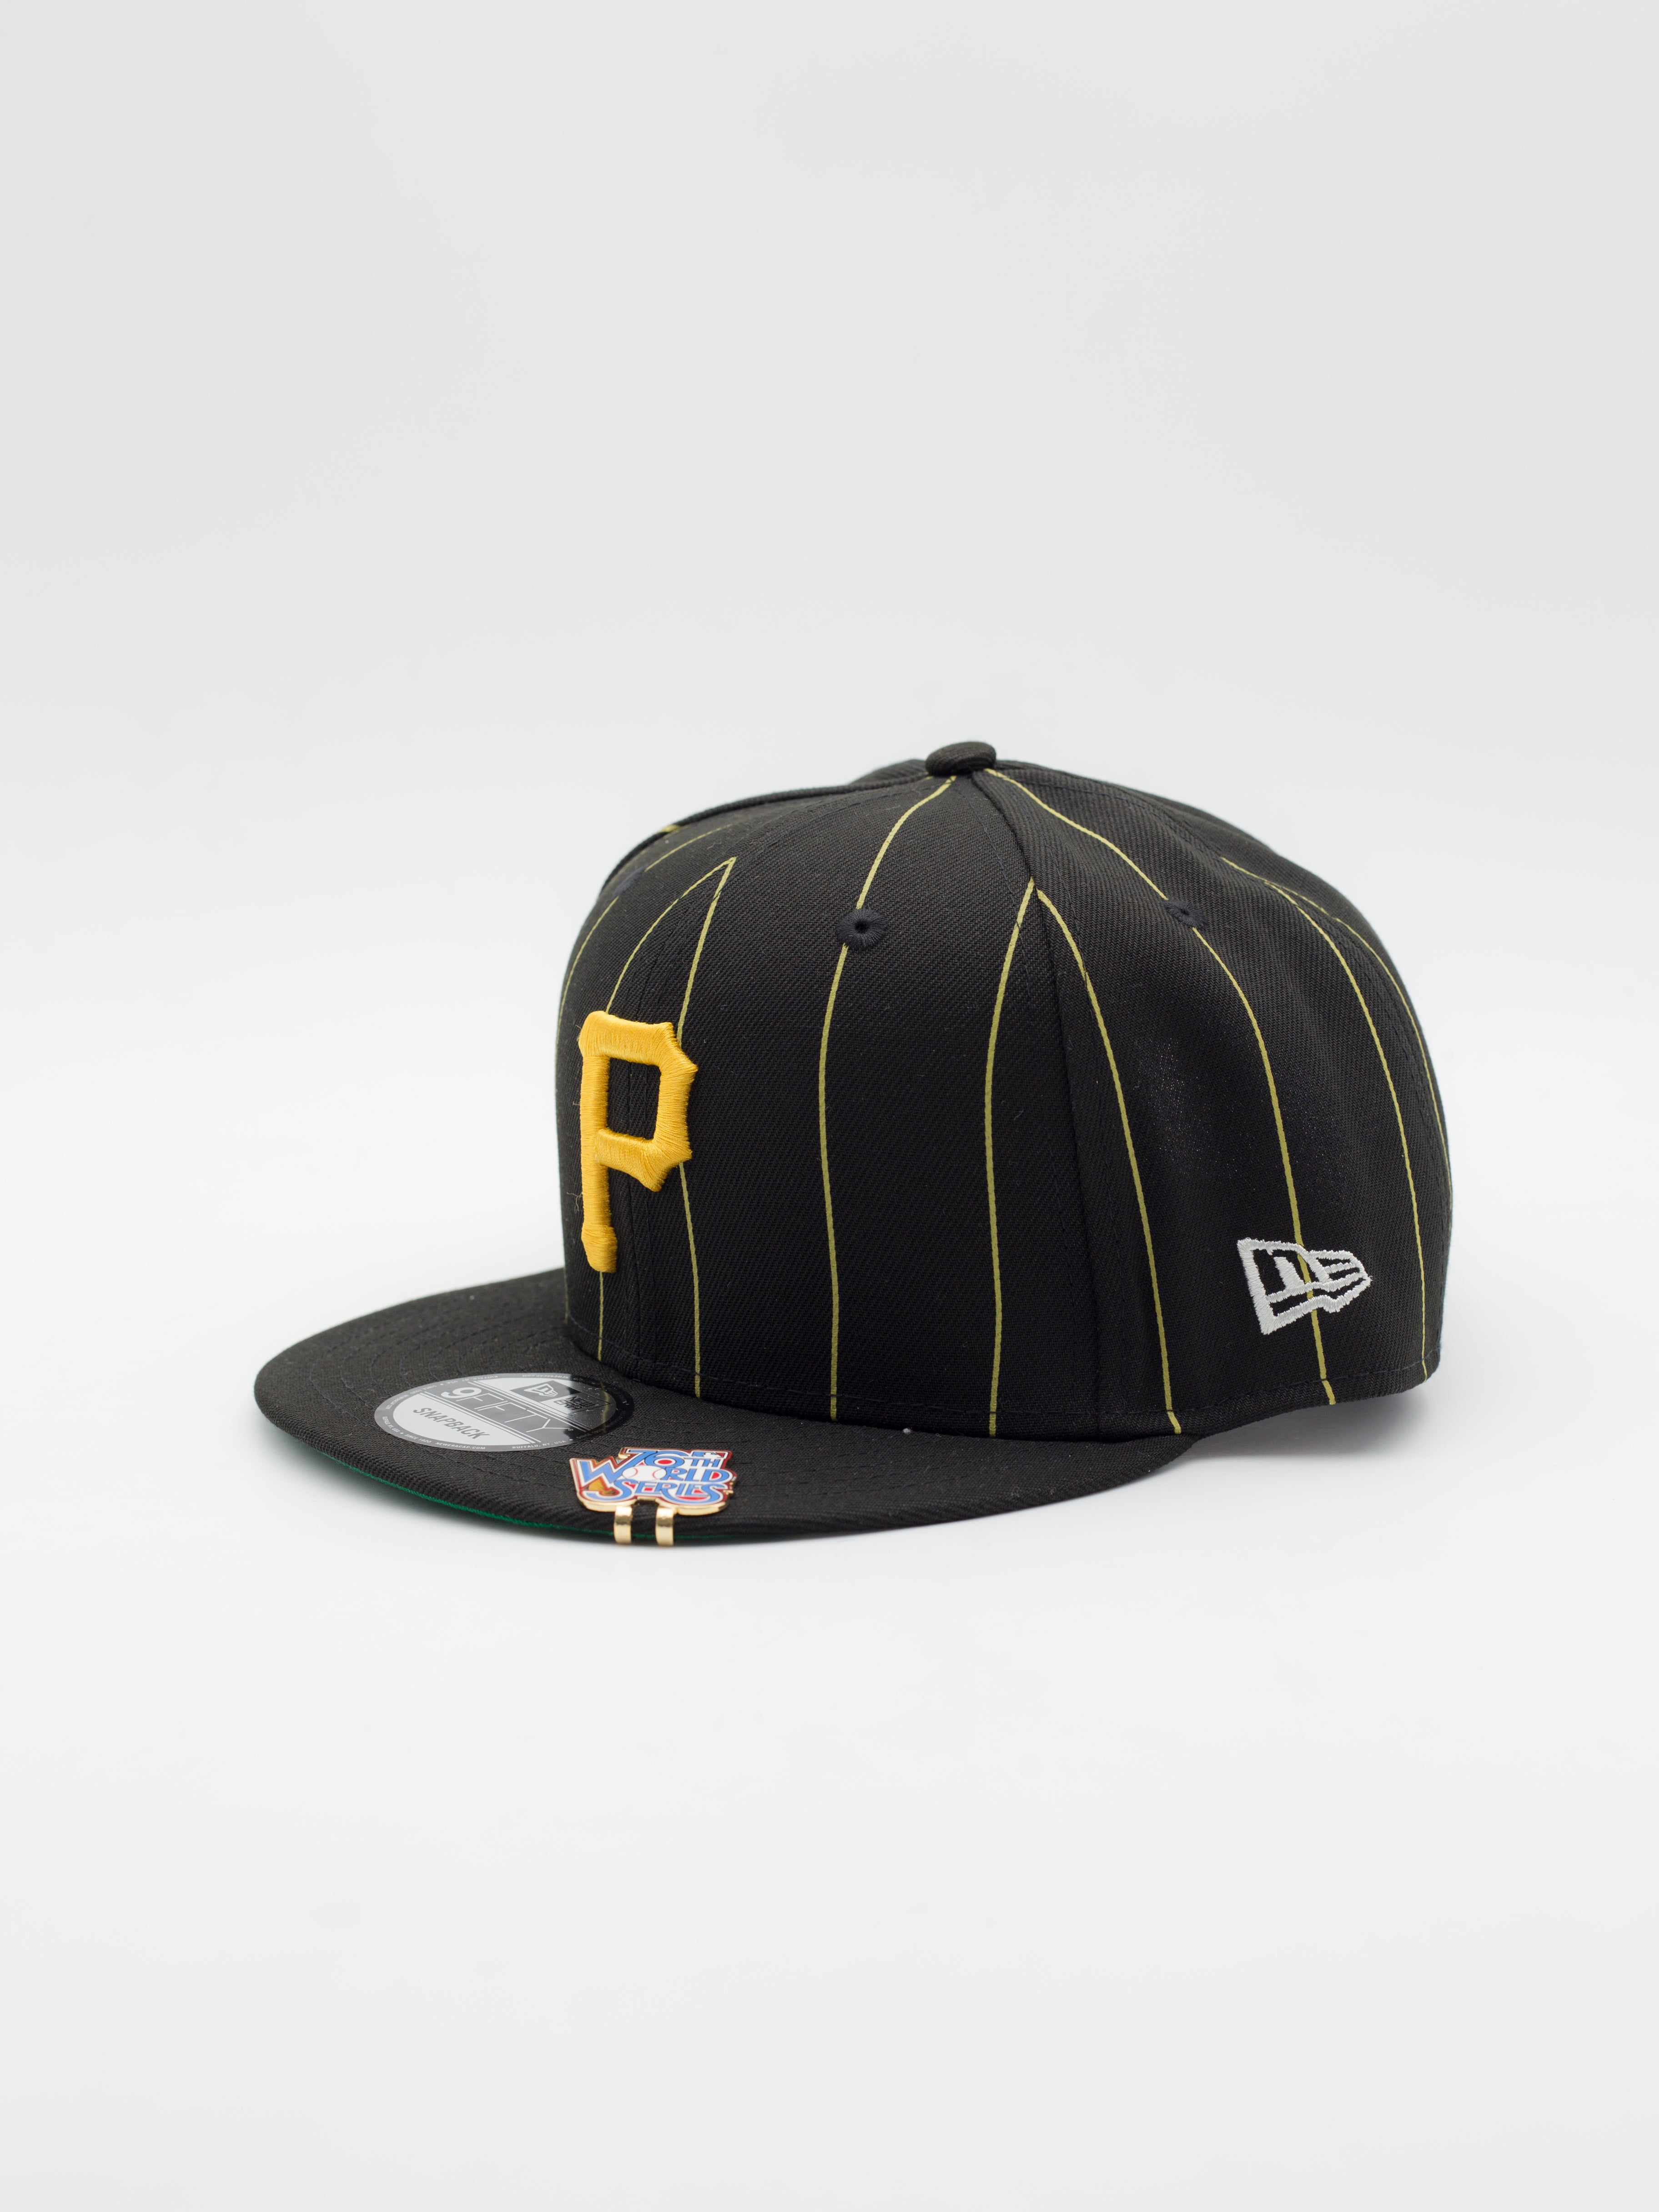 9FIFTY Pinstripe WS Pittsburgh Pirates Snapback Black - La Tienda de las Gorras